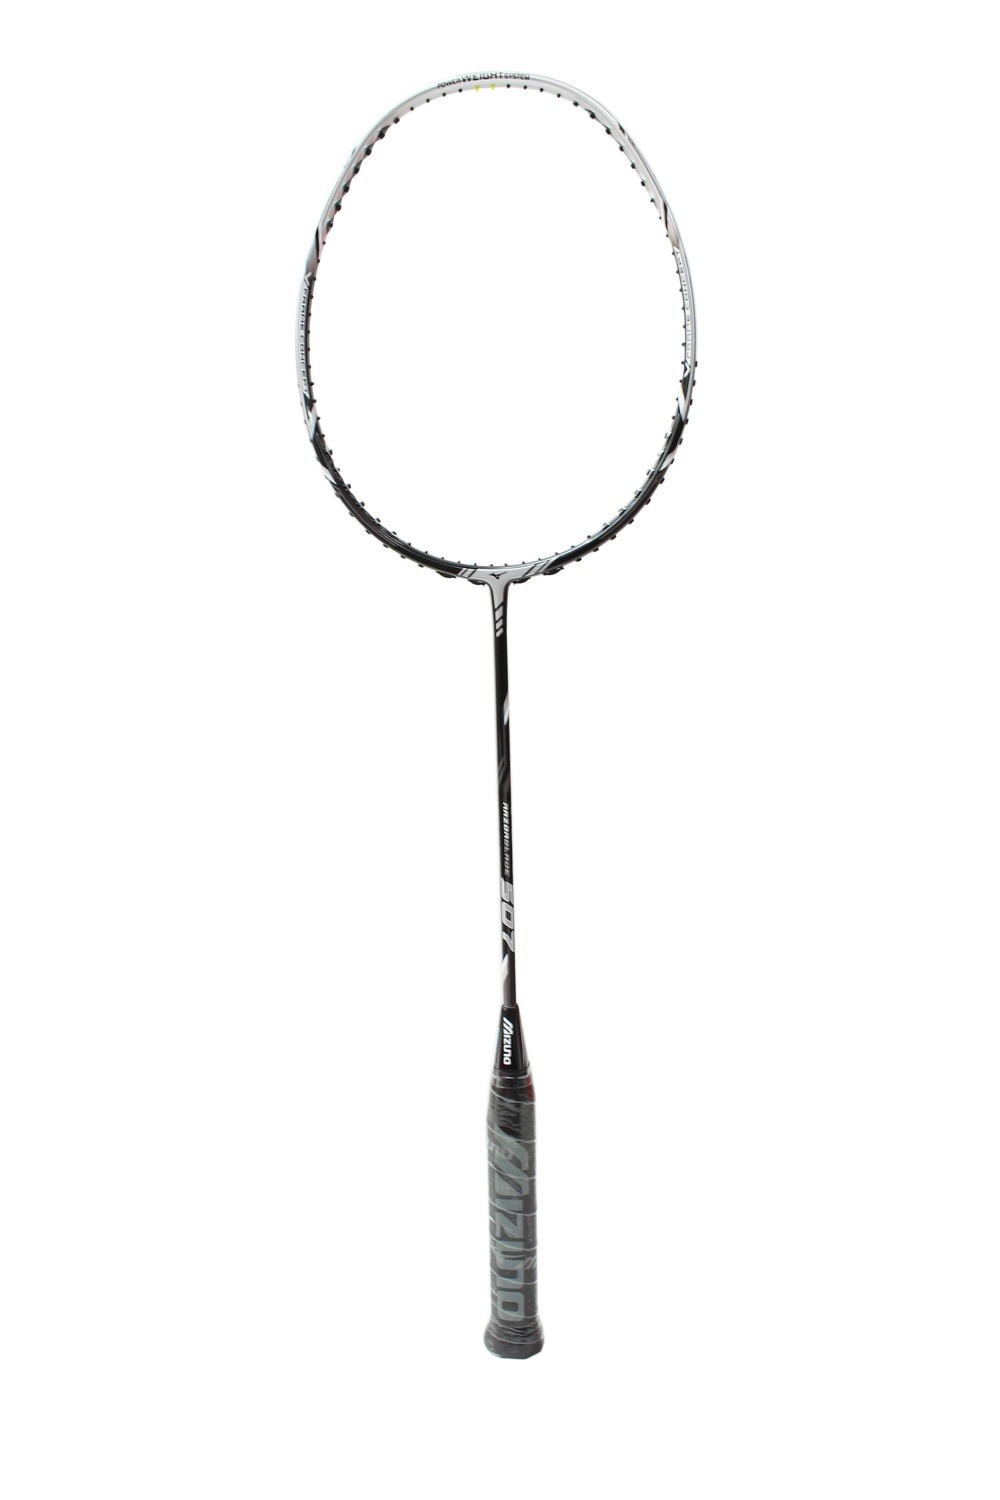 Mizuno Razor Blade 507 Badminton Racquet